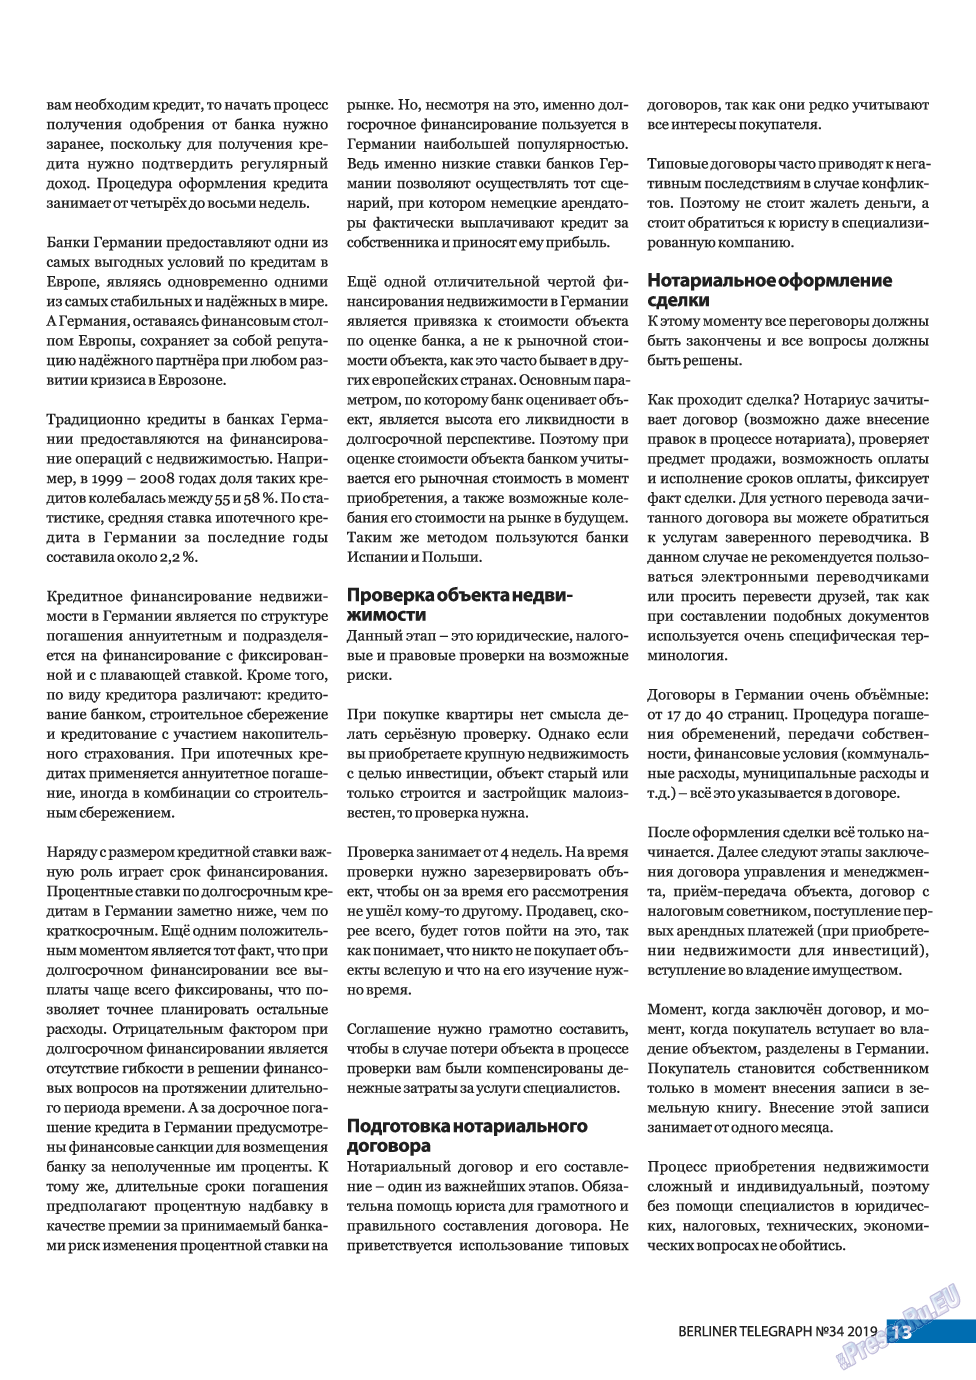 Берлинский телеграф, журнал. 2019 №34 стр.13